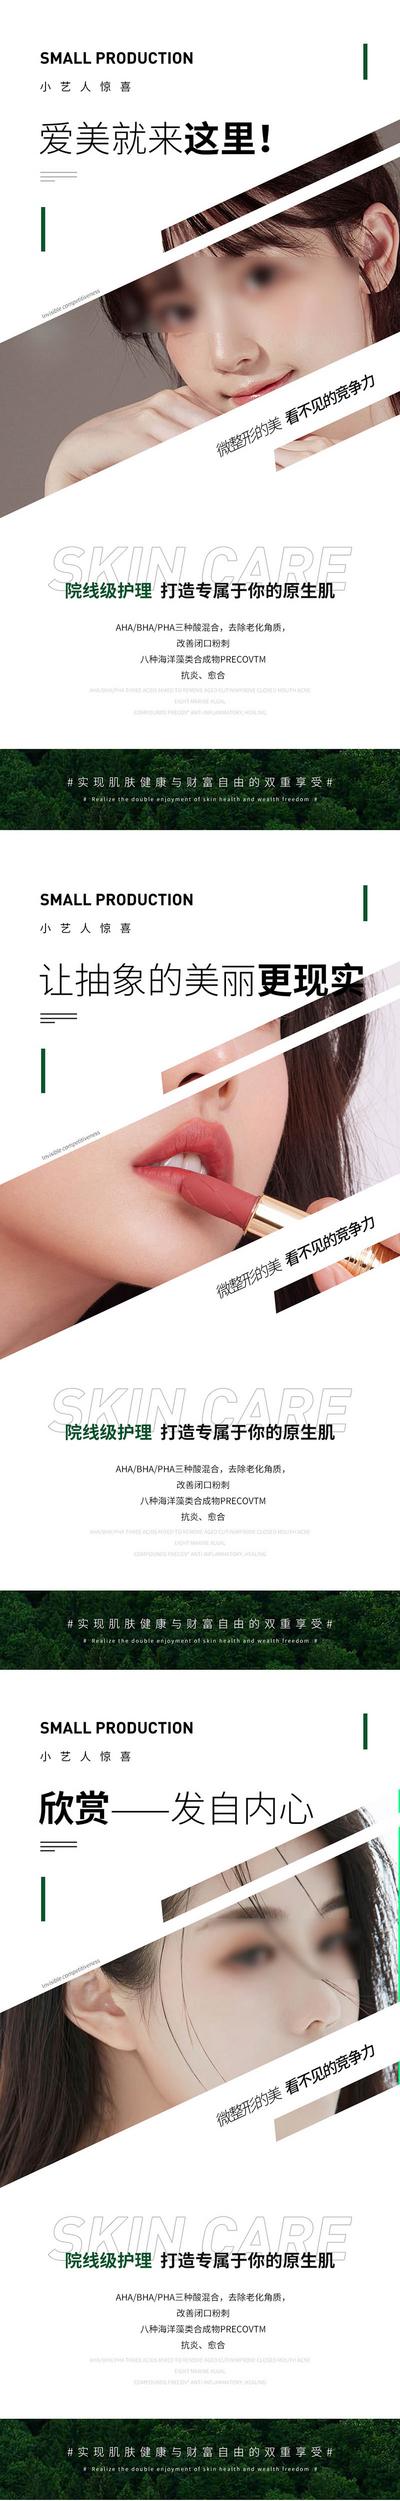 南门网 广告 海报 医美 日签 人物 早安 美容 清新 模特 宣传